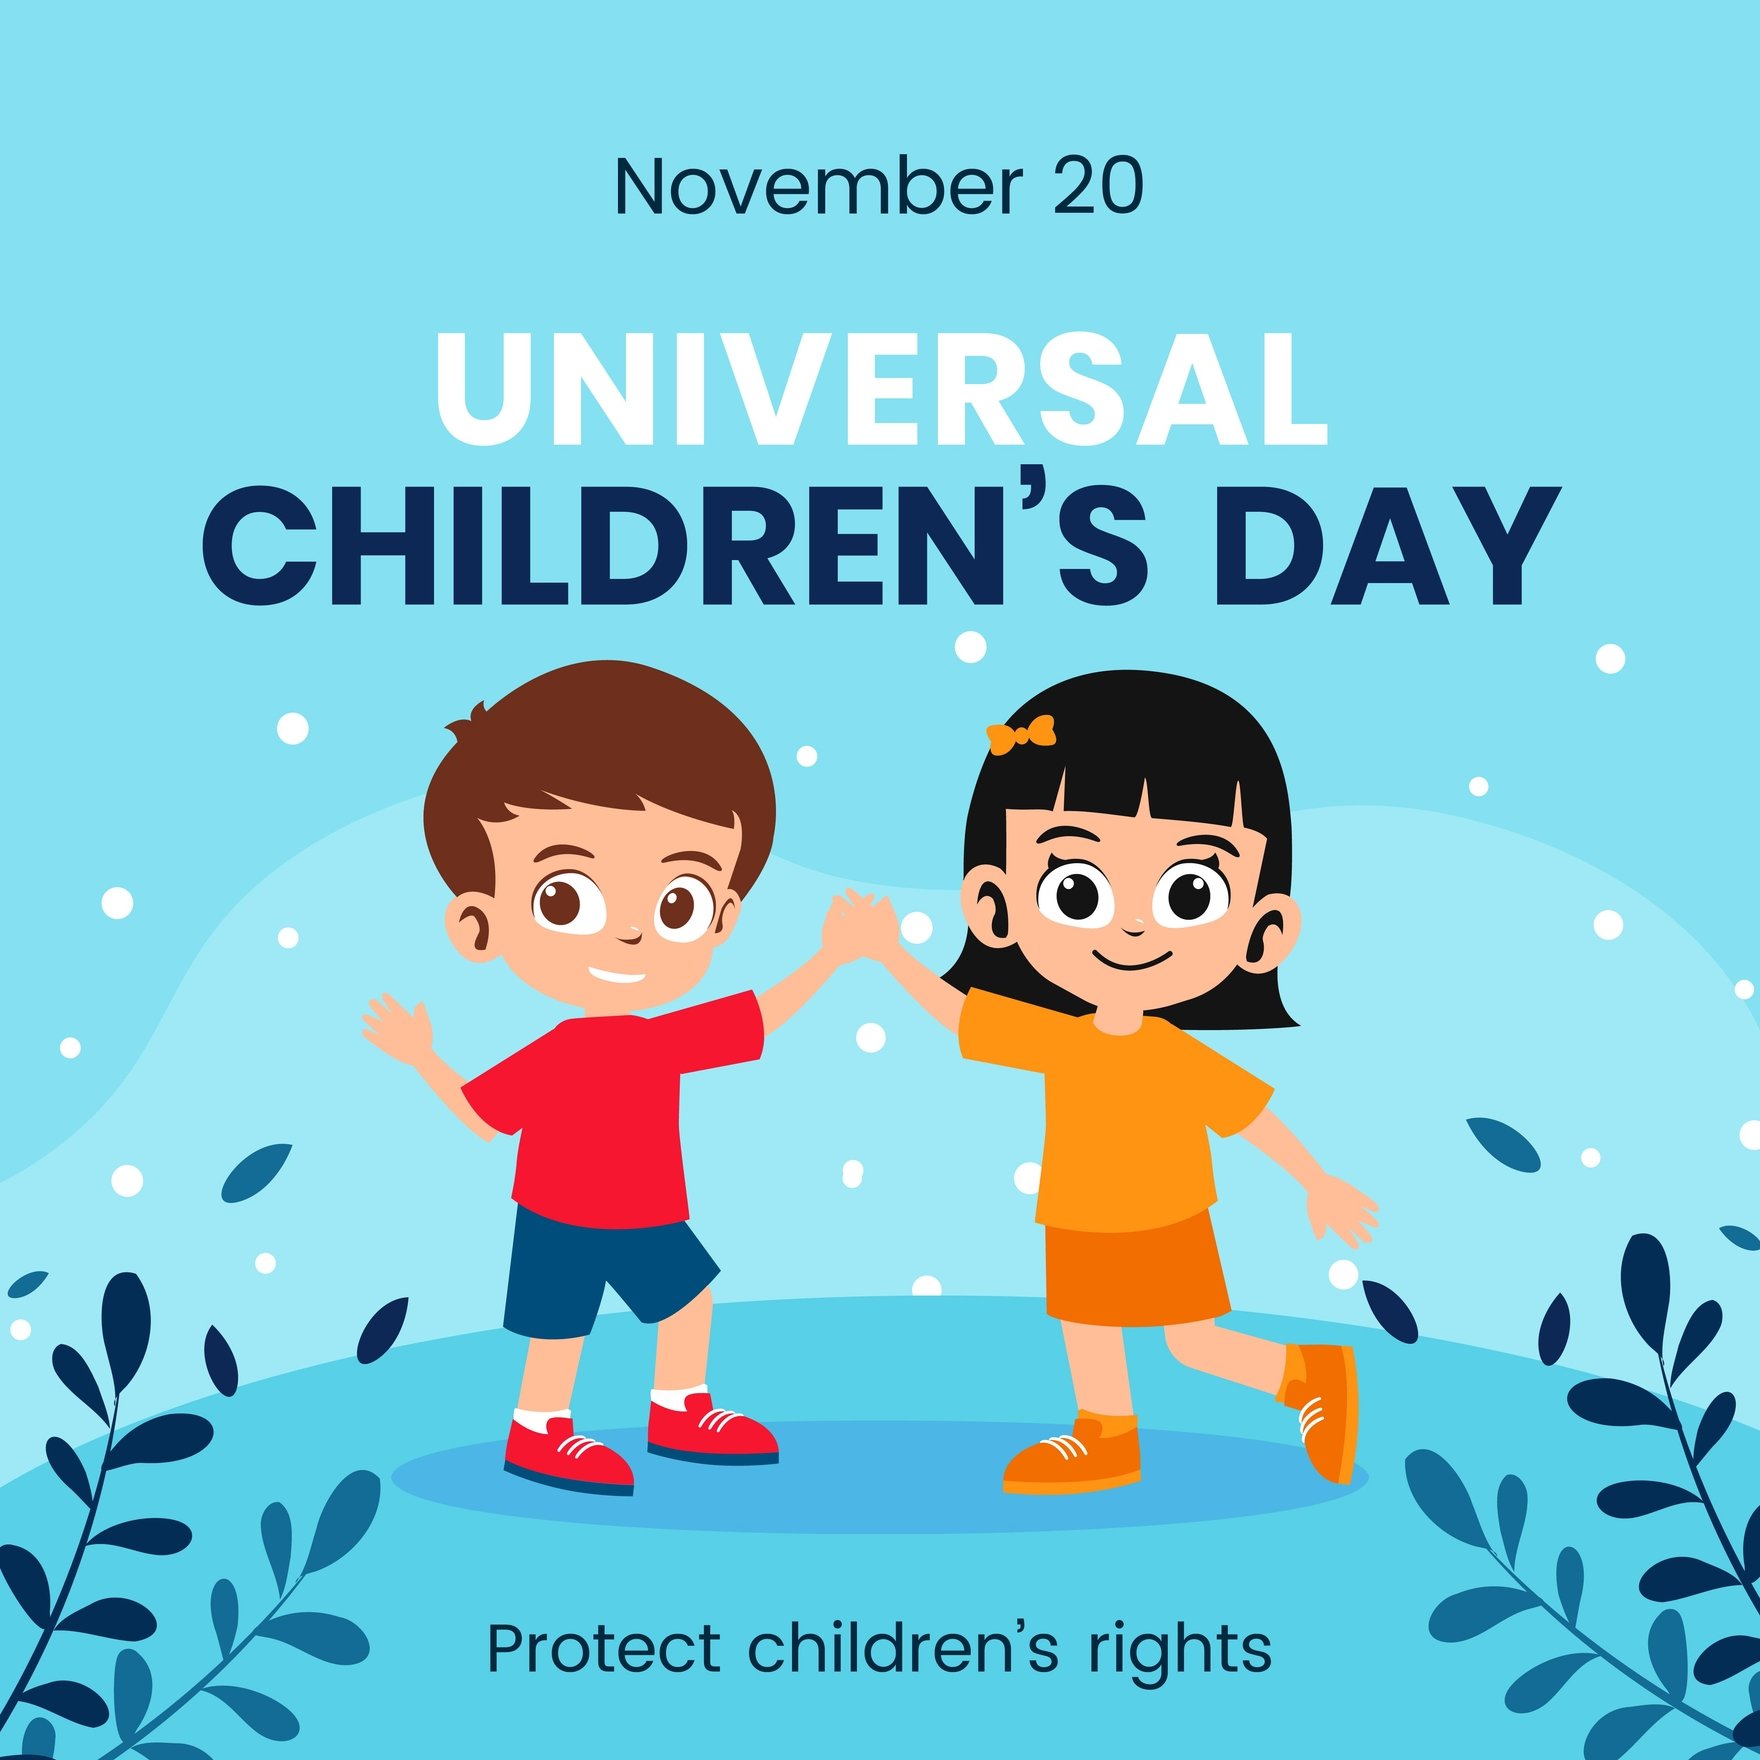 Free Universal Children’s Day Instagram Post in Illustrator, PSD, EPS, SVG, JPG, PNG